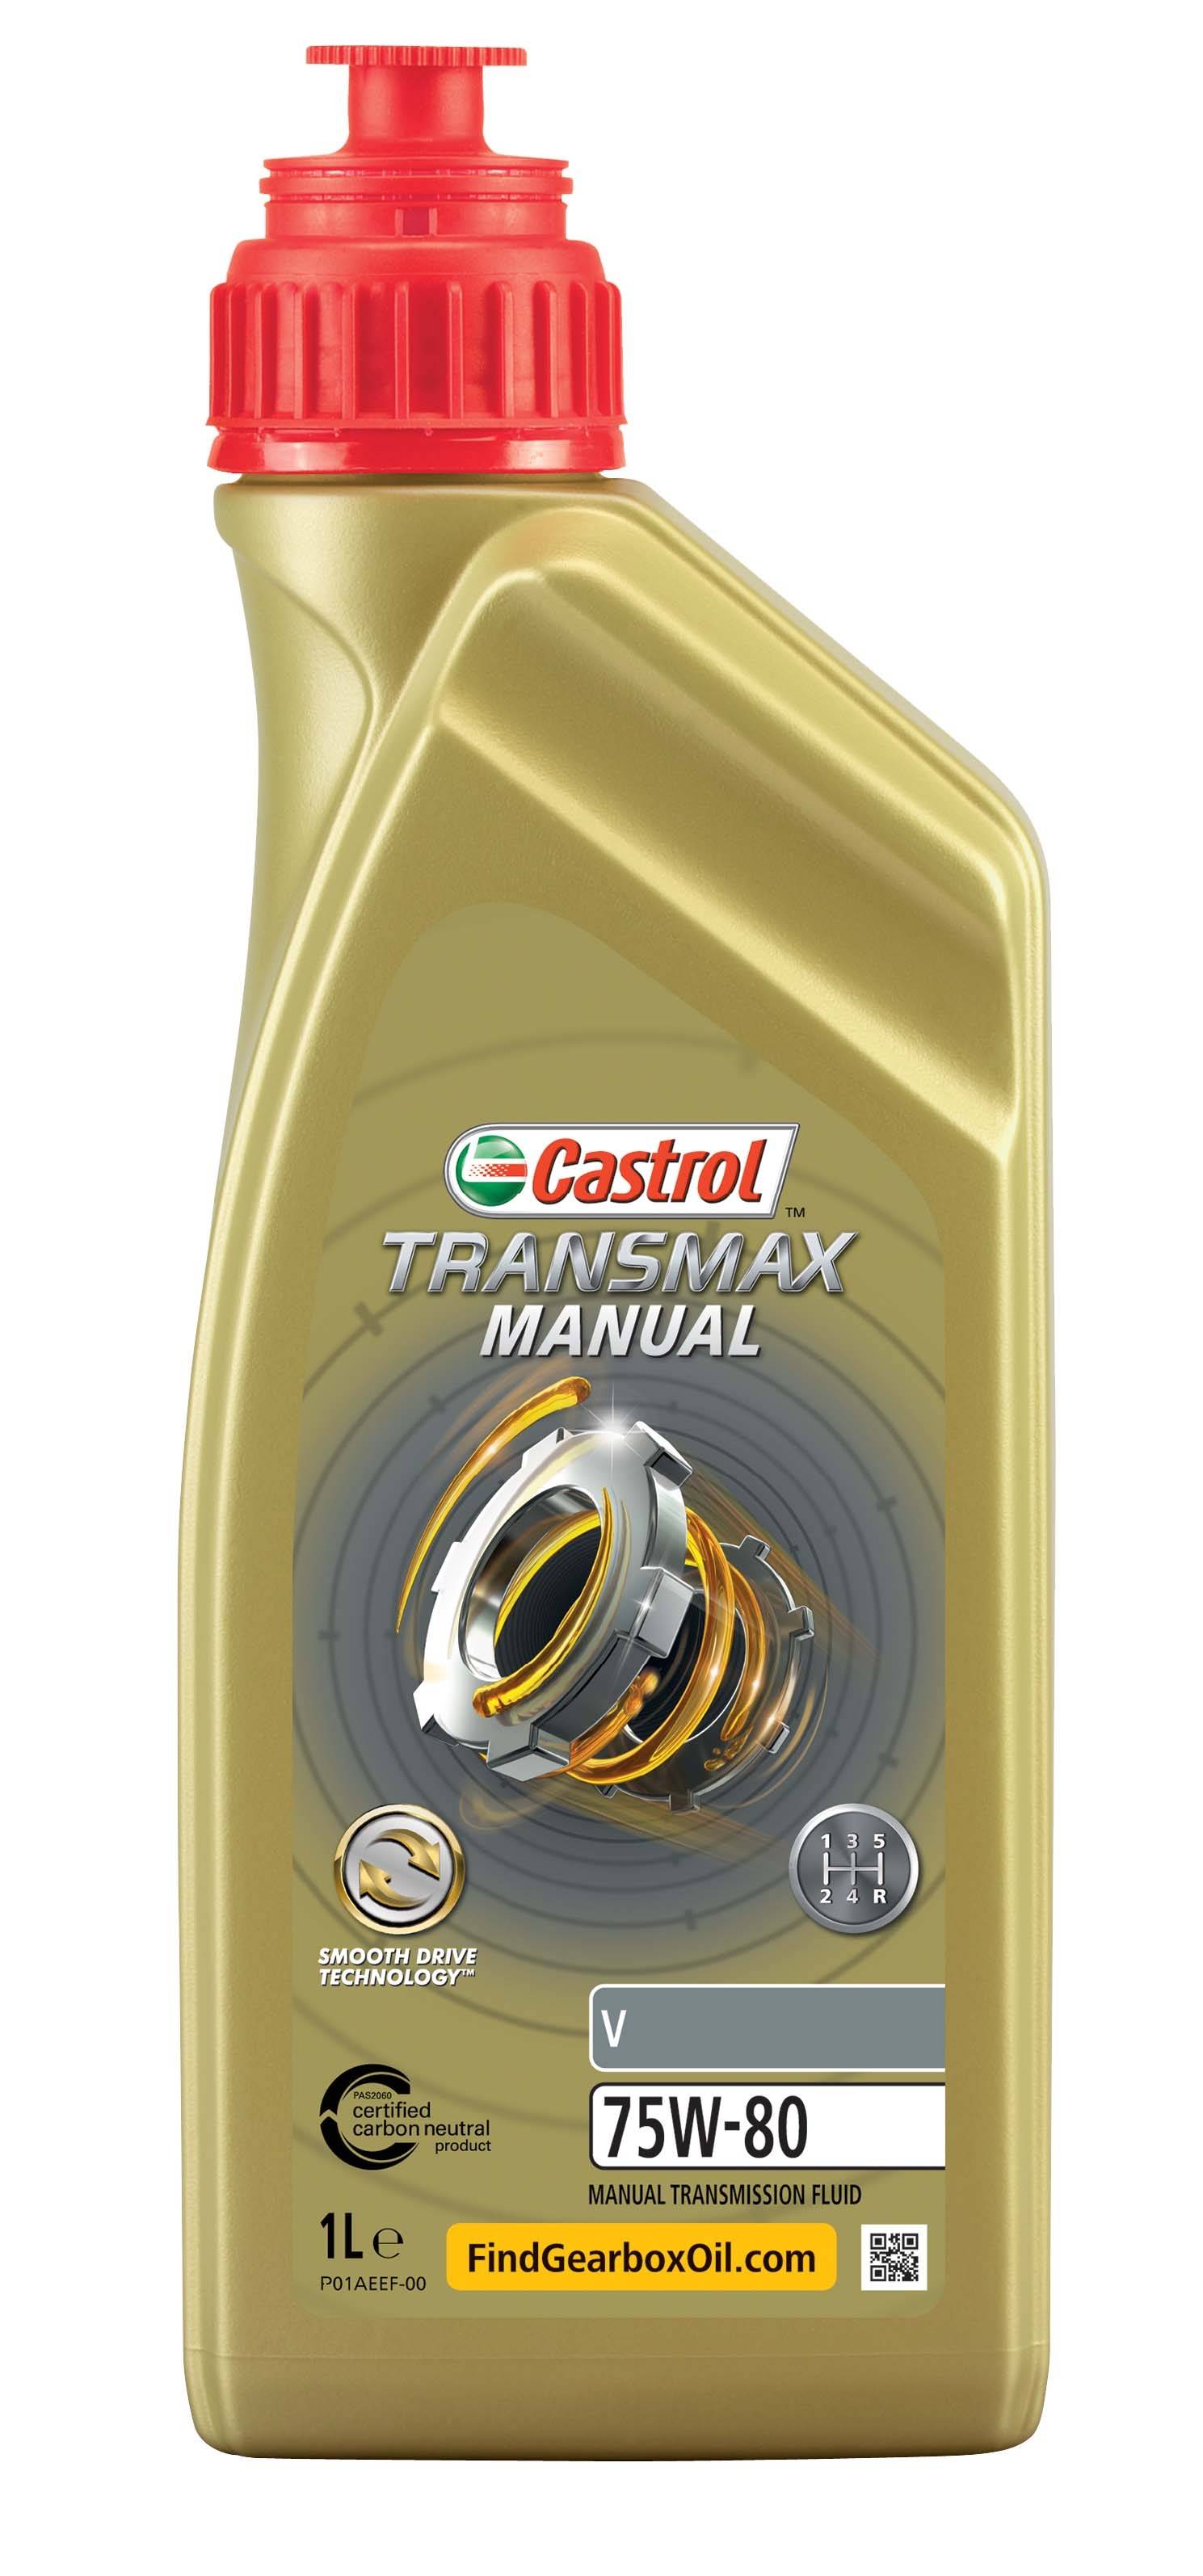 Масло трансмиссионное Transmax Manual v 75w-80 1L - Castrol 15D7F9